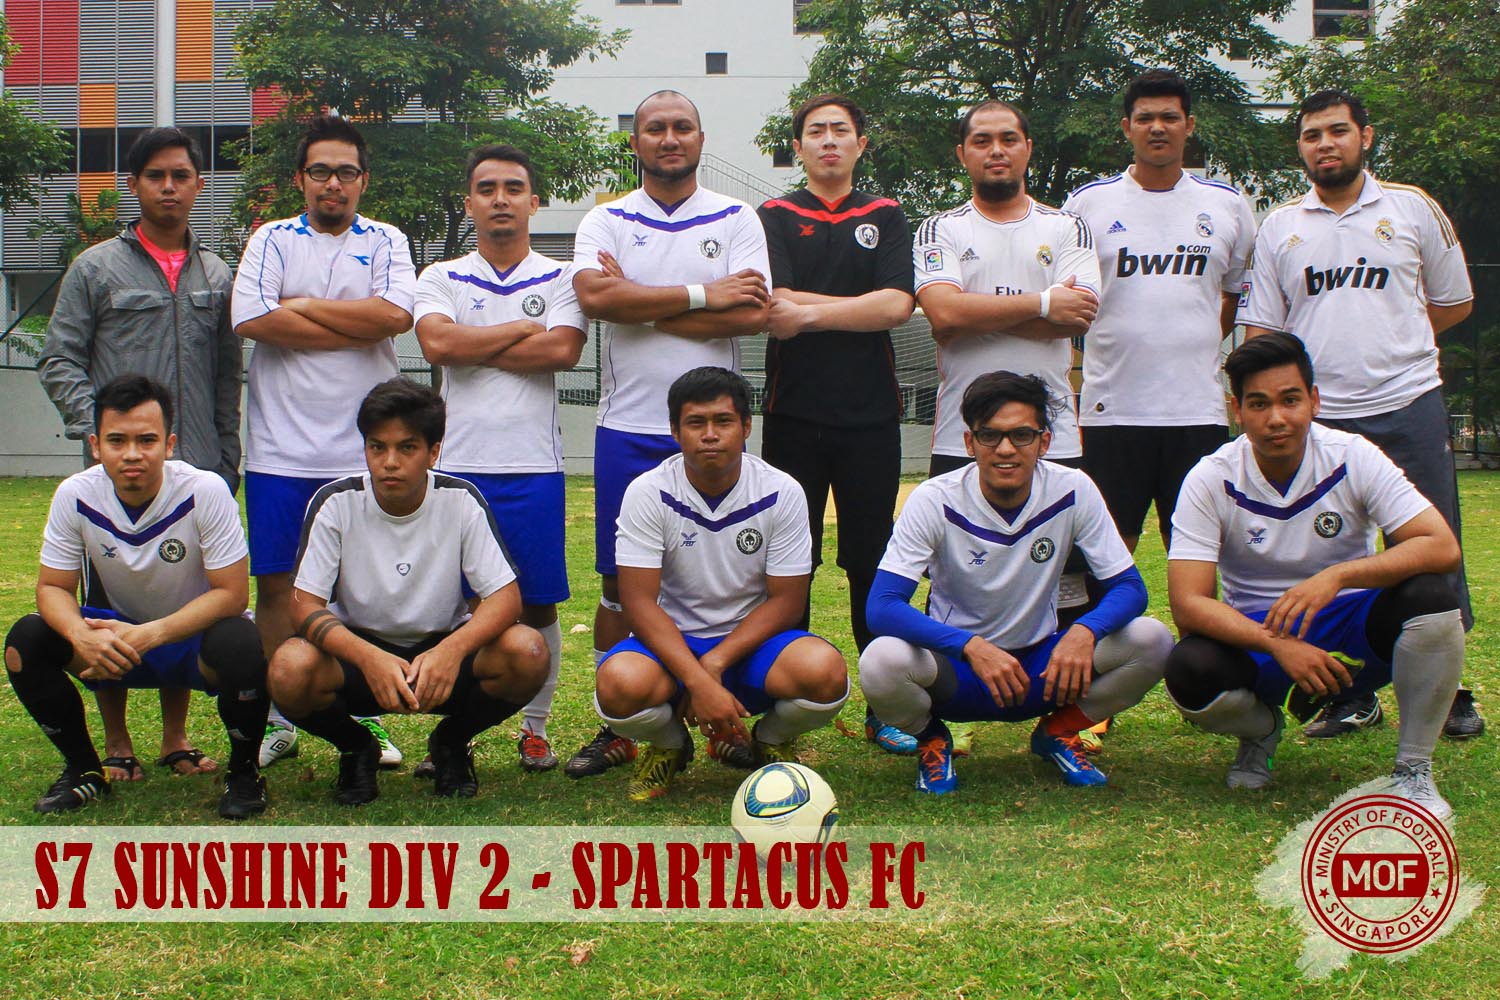 Spartacus FC